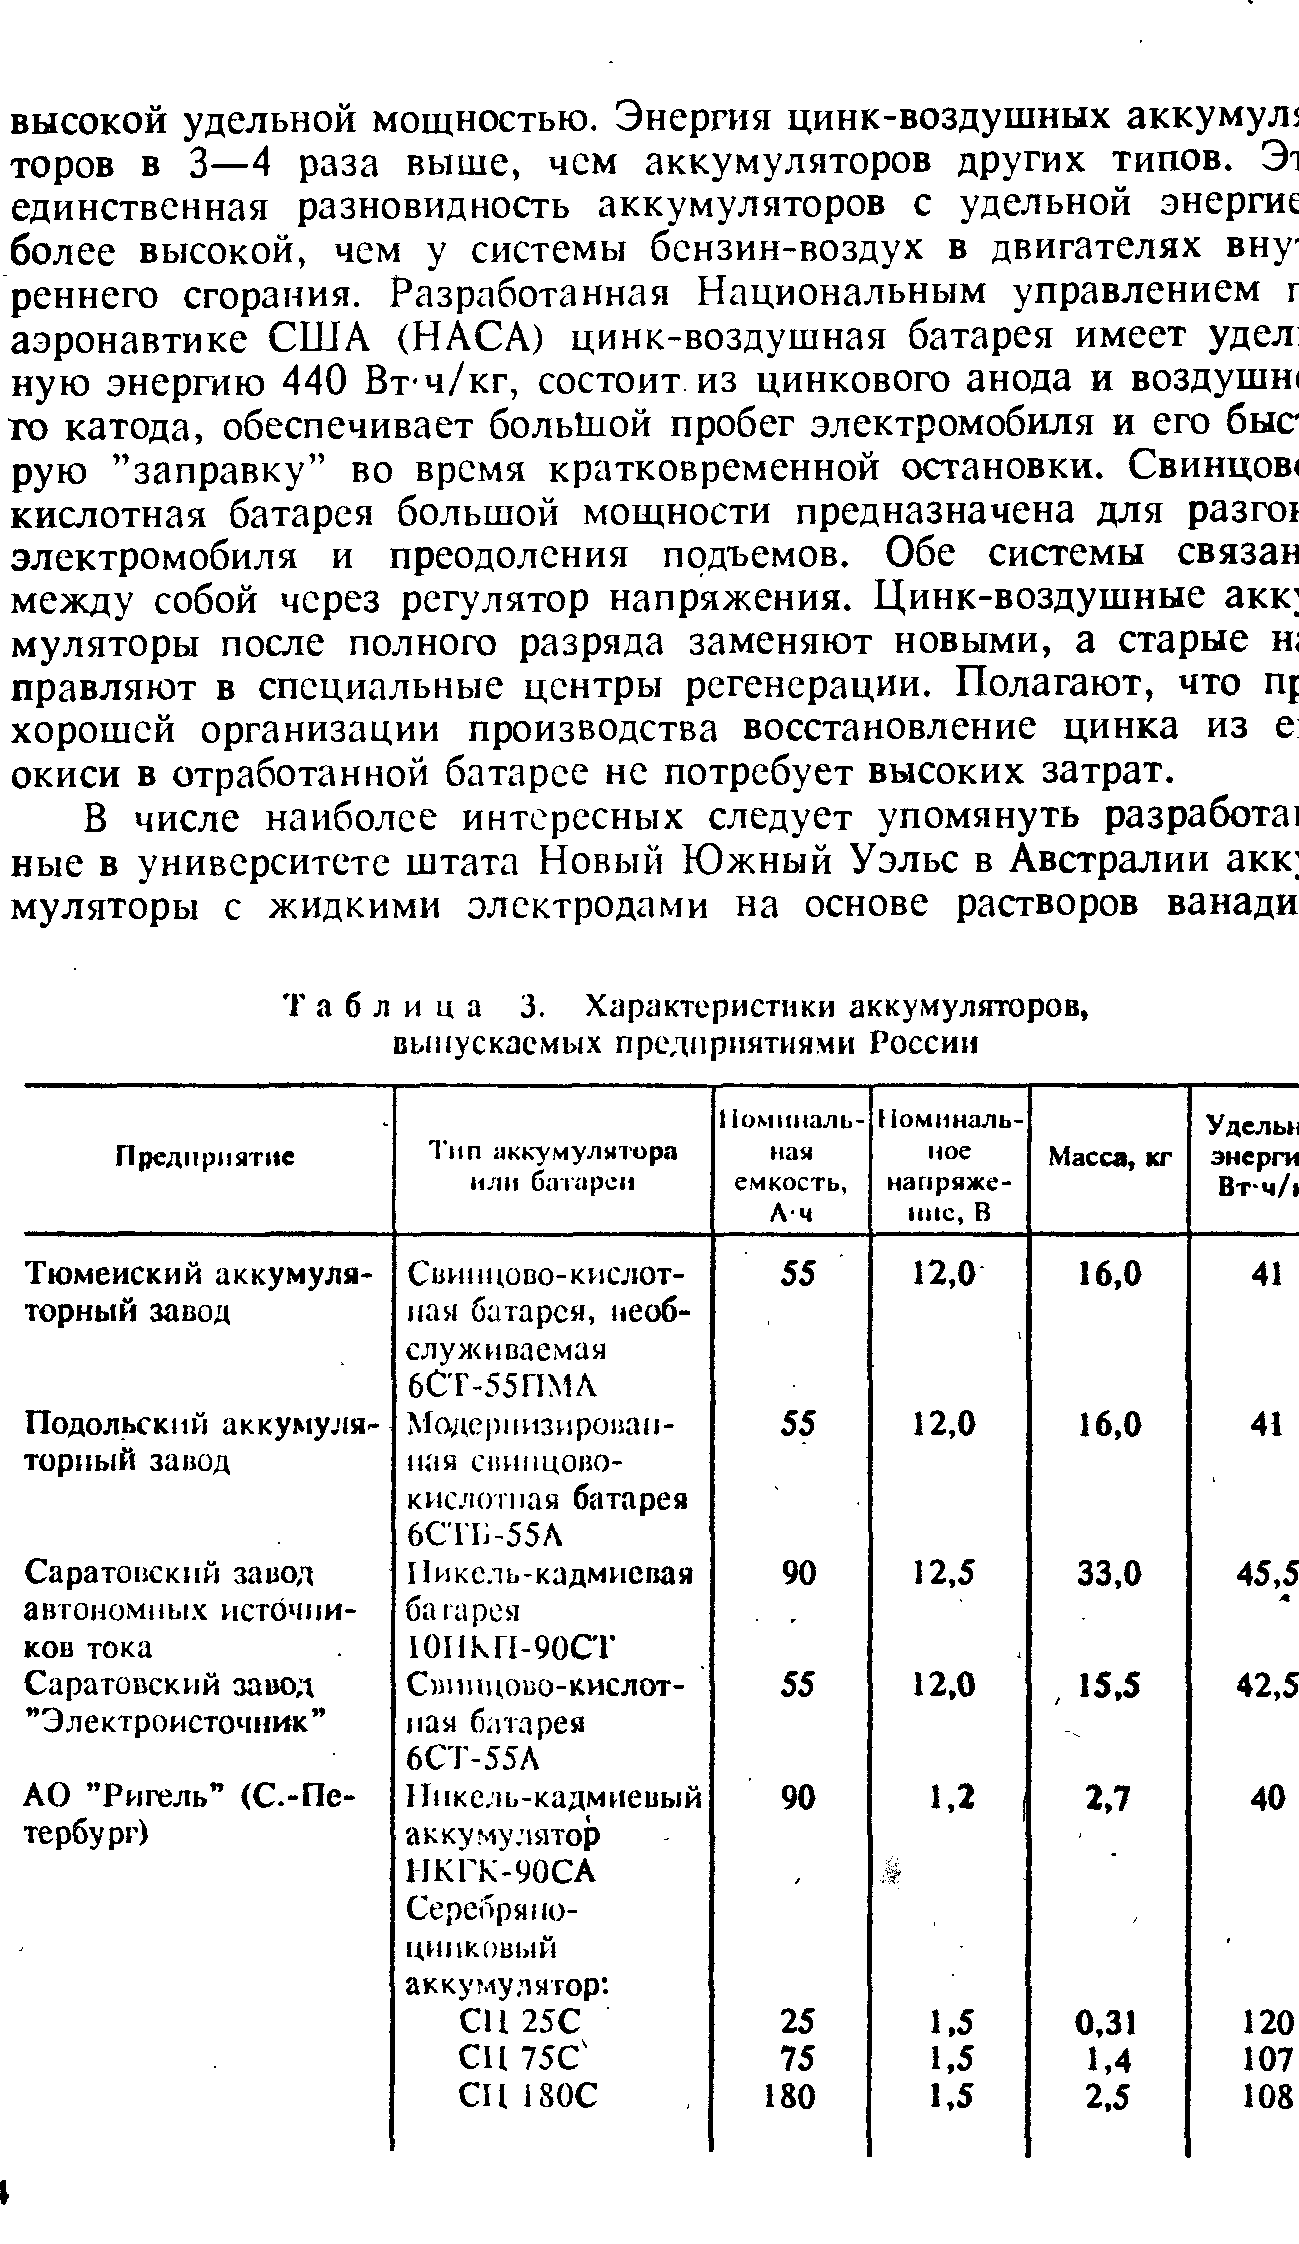 Таблица 3. Характеристики аккумуляторов, выпускаемых прелприятиями России
